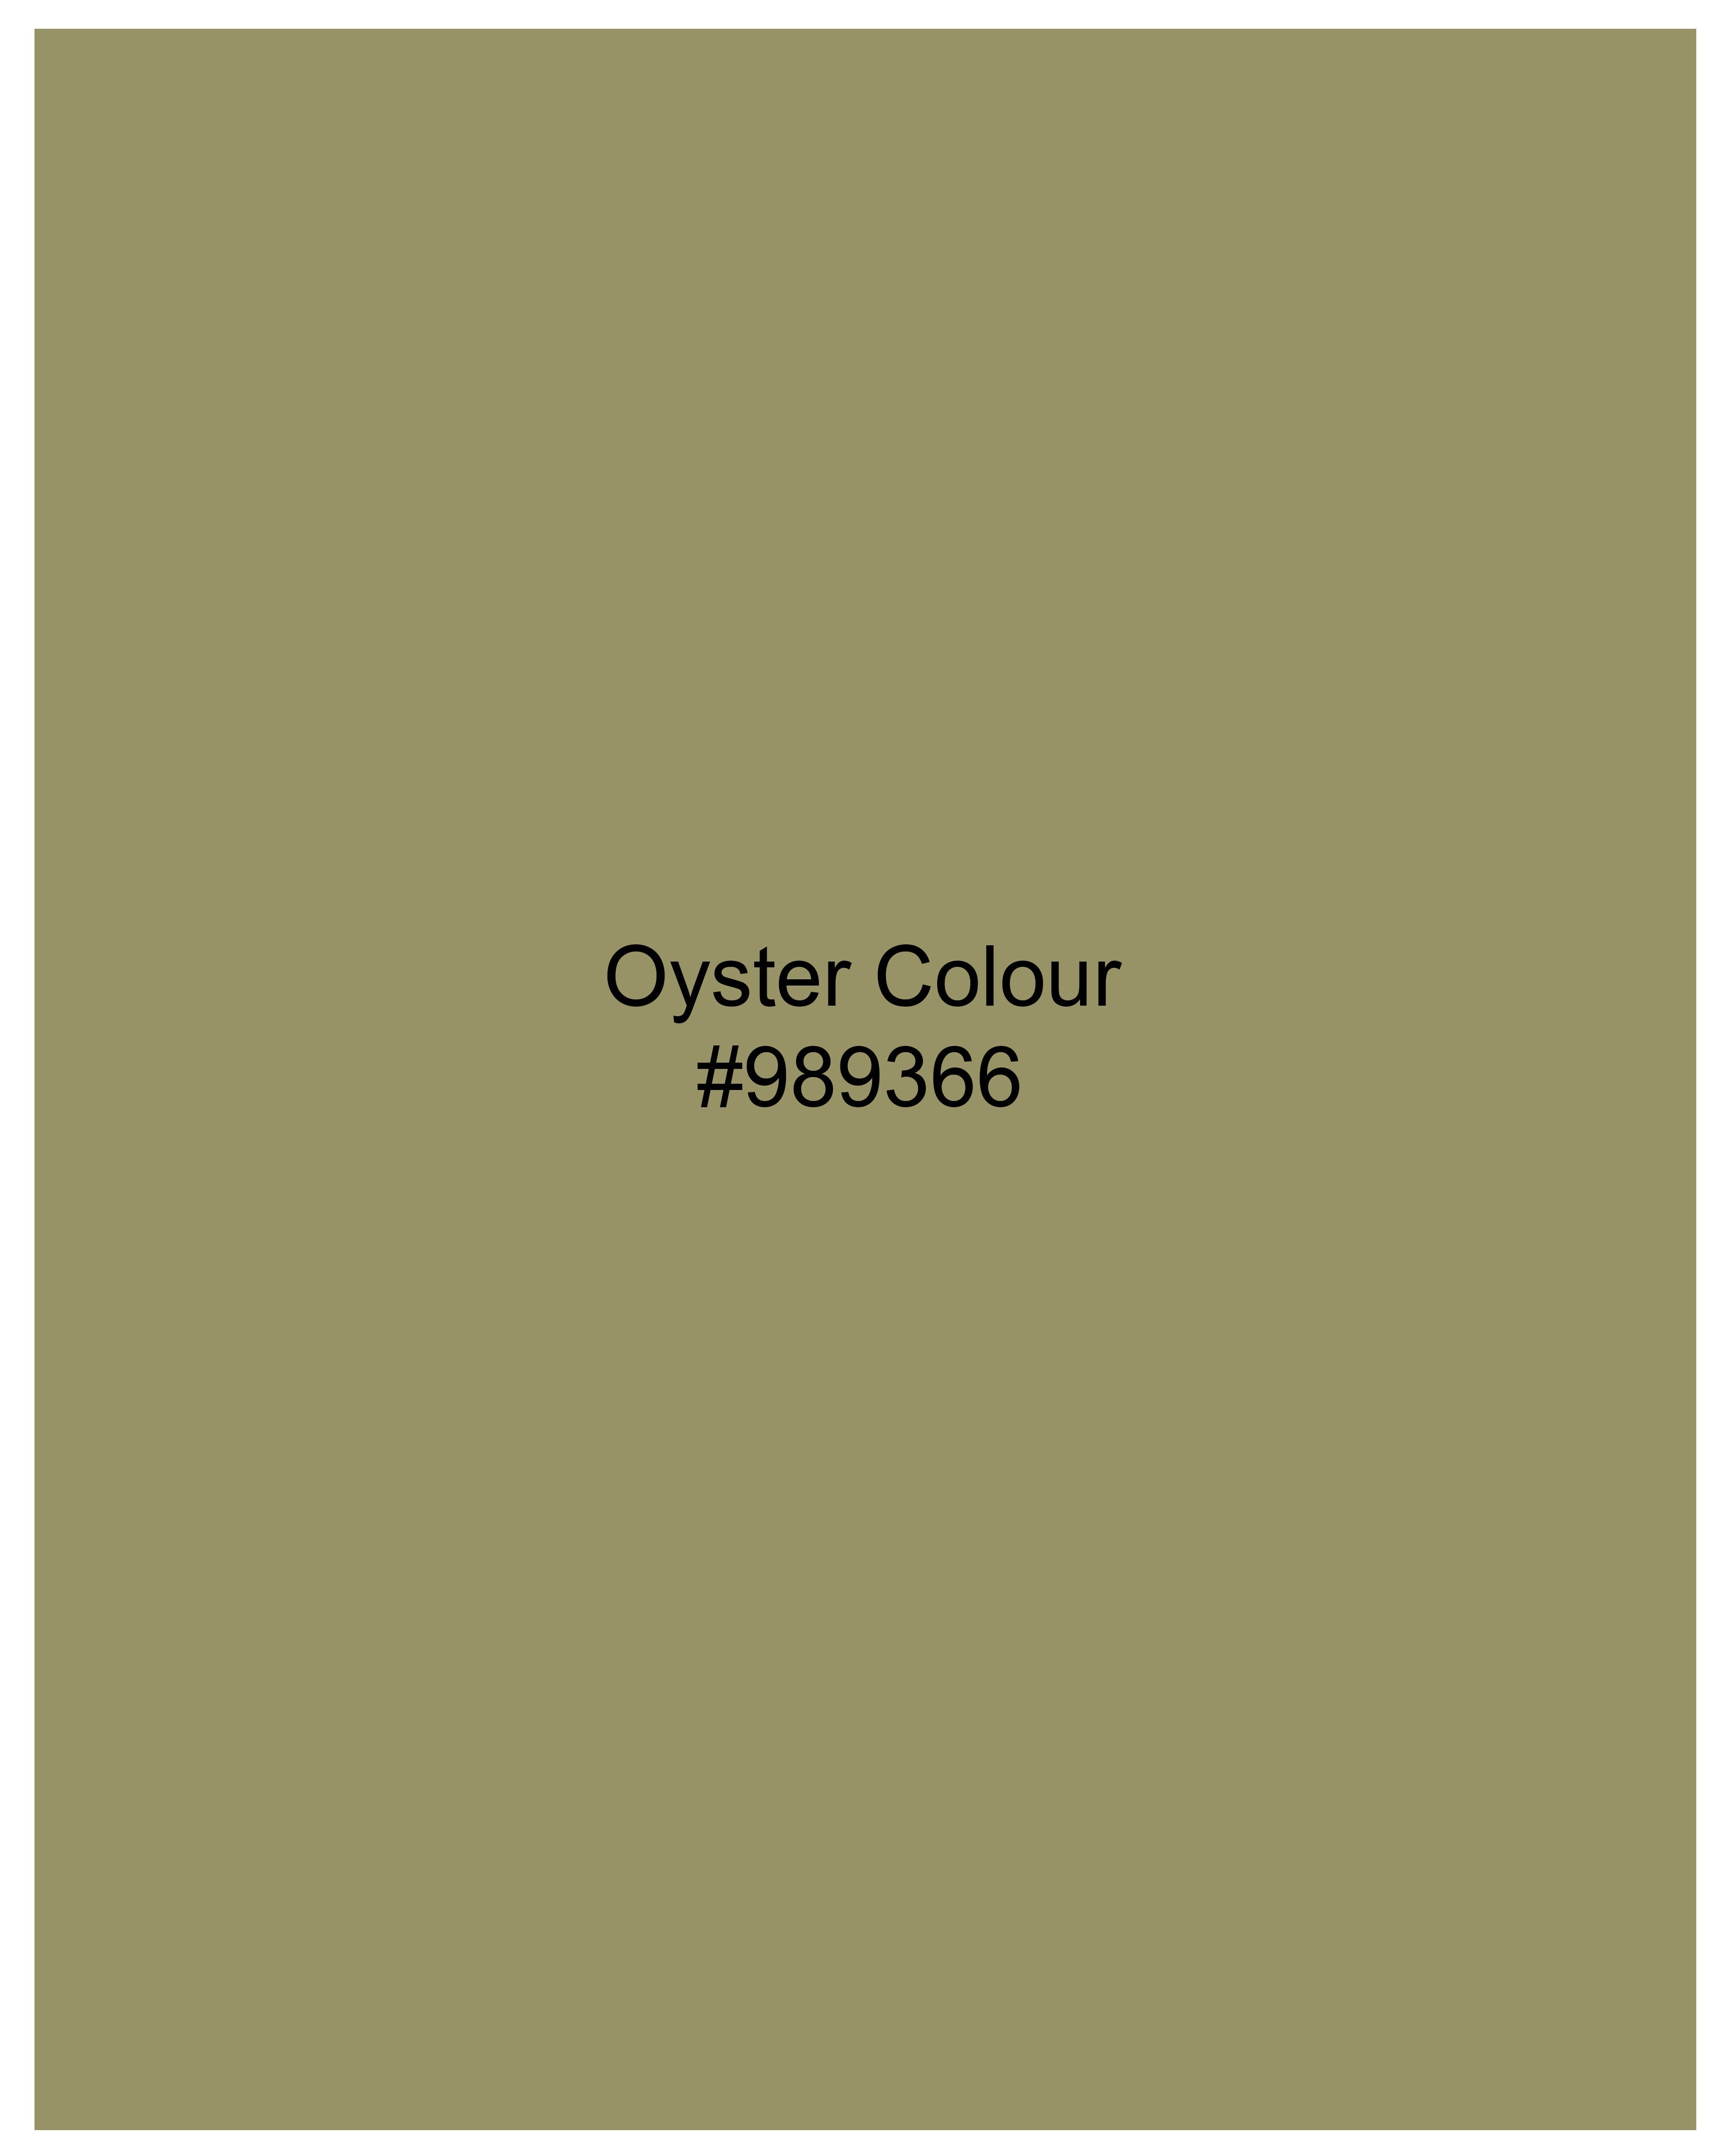 Oyster Green Luxurious Linen Shirt 9627-GR-38,9627-GR-H-38,9627-GR-39,9627-GR-H-39,9627-GR-40,9627-GR-H-40,9627-GR-42,9627-GR-H-42,9627-GR-44,9627-GR-H-44,9627-GR-46,9627-GR-H-46,9627-GR-48,9627-GR-H-48,9627-GR-50,9627-GR-H-50,9627-GR-52,9627-GR-H-52